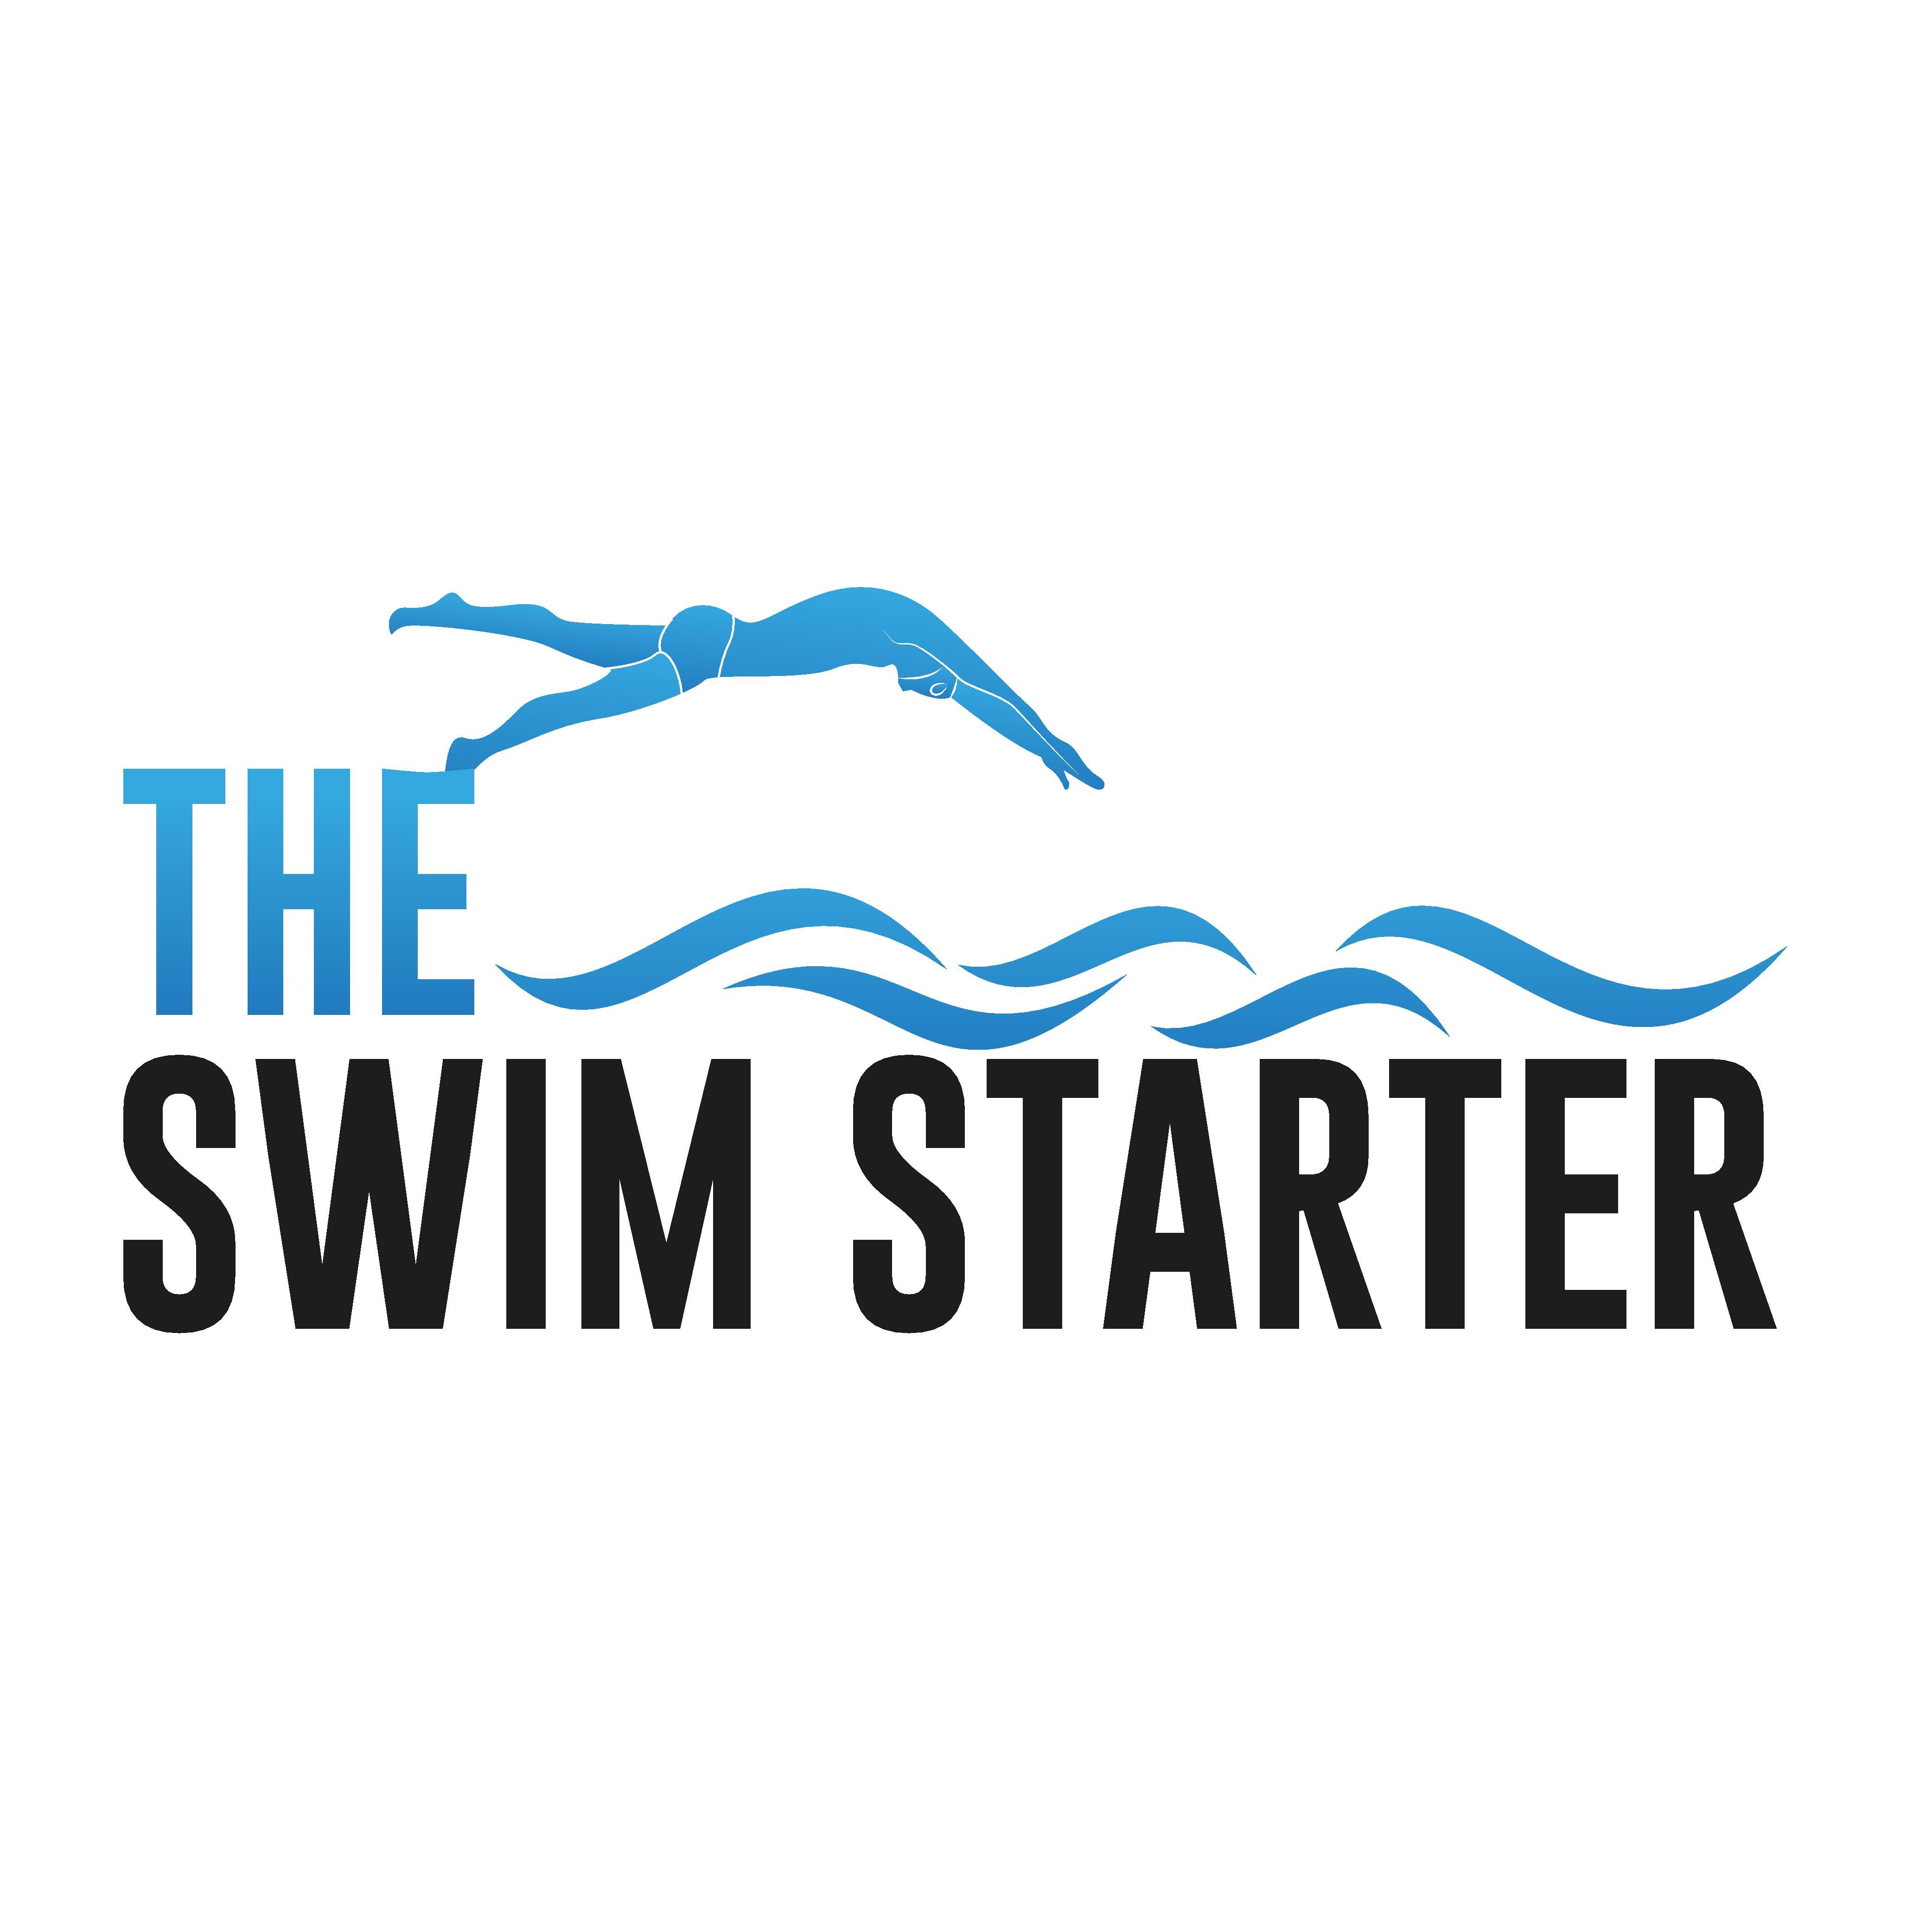 The Swim Starter